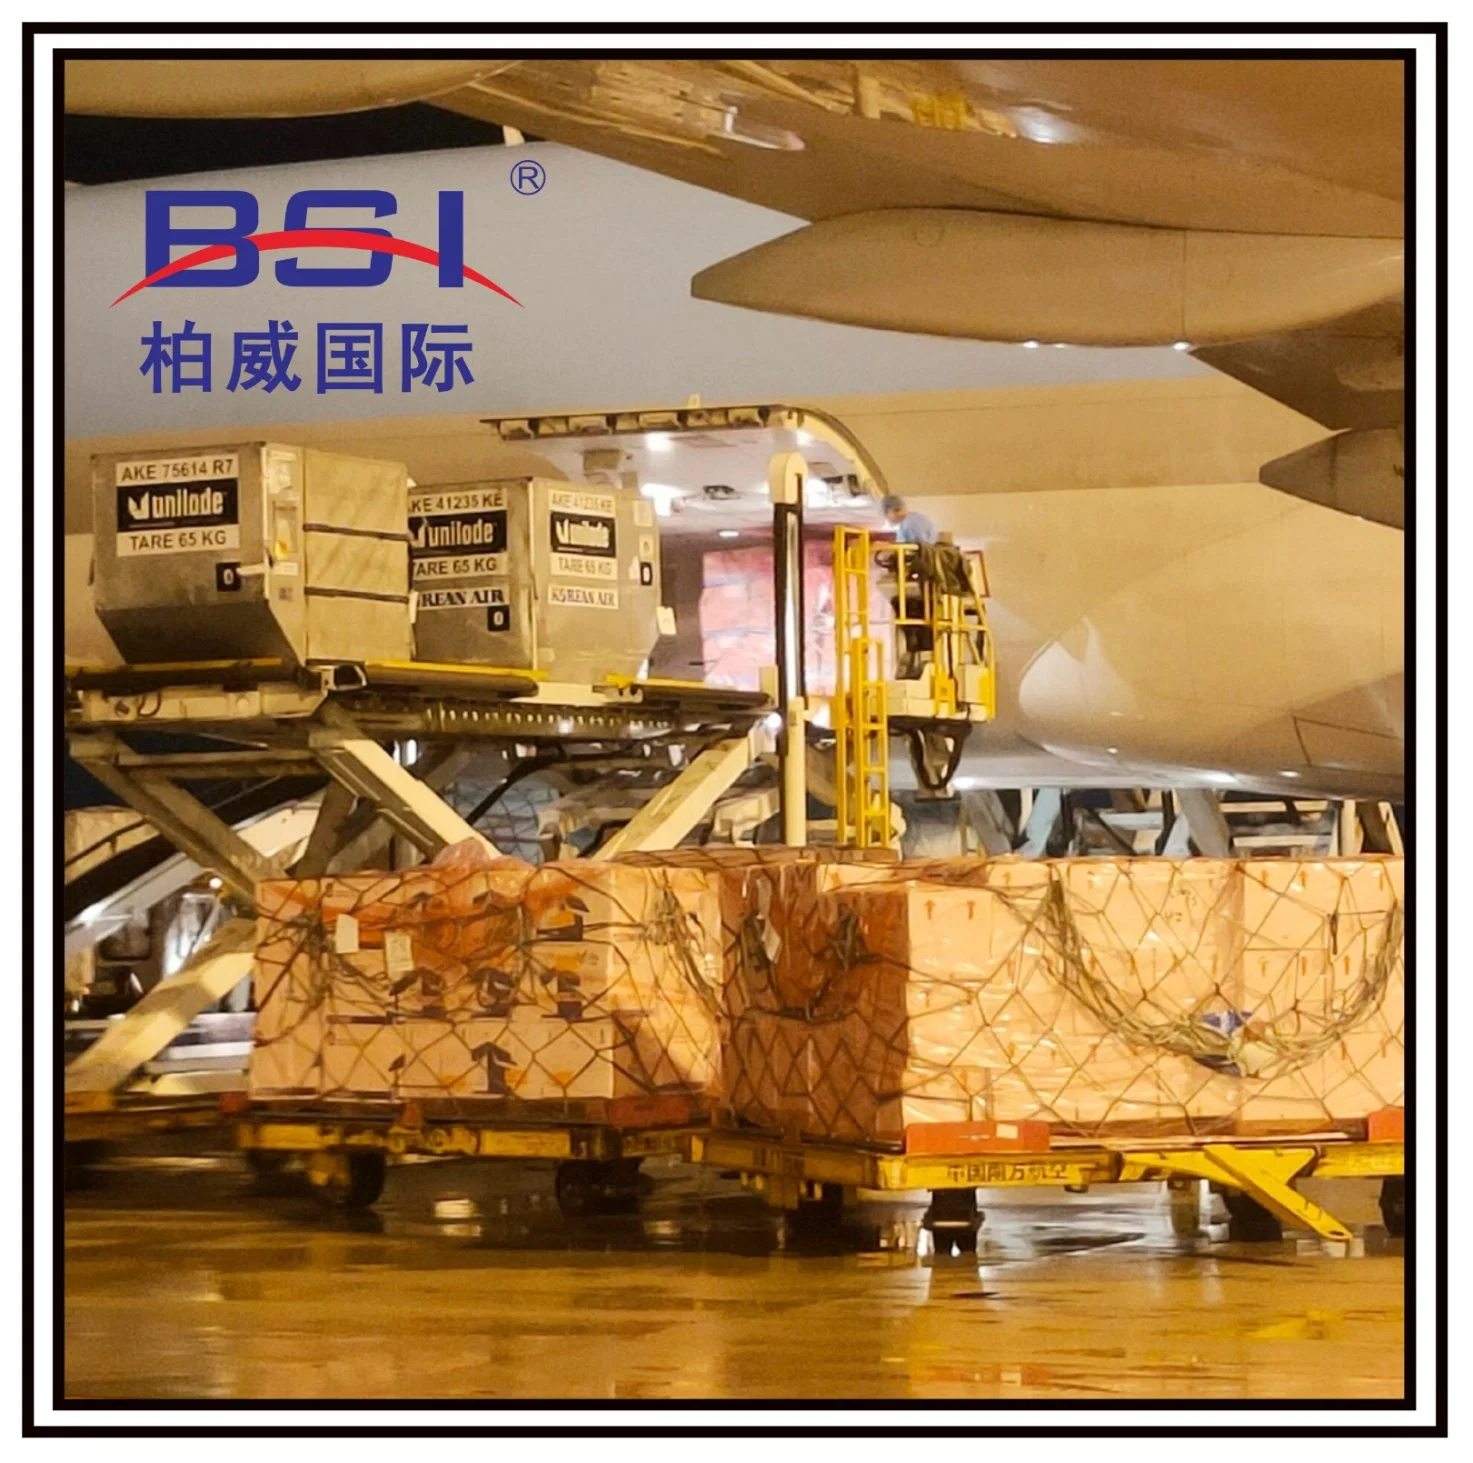 1688 Transporte de carga aérea/marítima rápida y barata Loistics Servicios de envío y envío de carga desde China a los países Bajos, París, Nigeria, el United S.